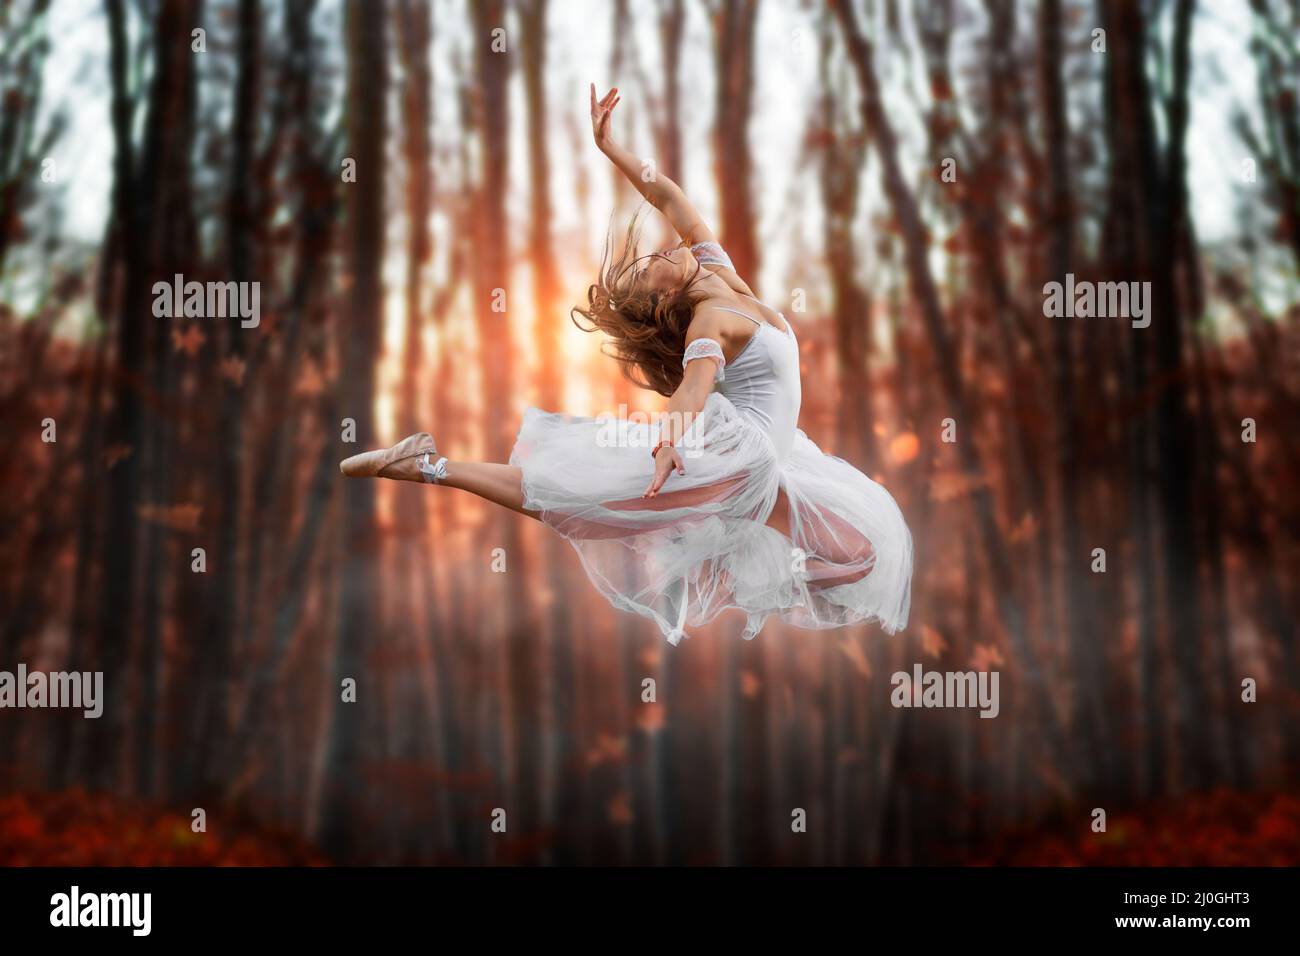 Flugattraktion einer jungen schönen Ballerina. Attraktives Modell in Ballerine-Kleid springen im Wald. Dunkle, verschwommene Rückseite Stockfoto